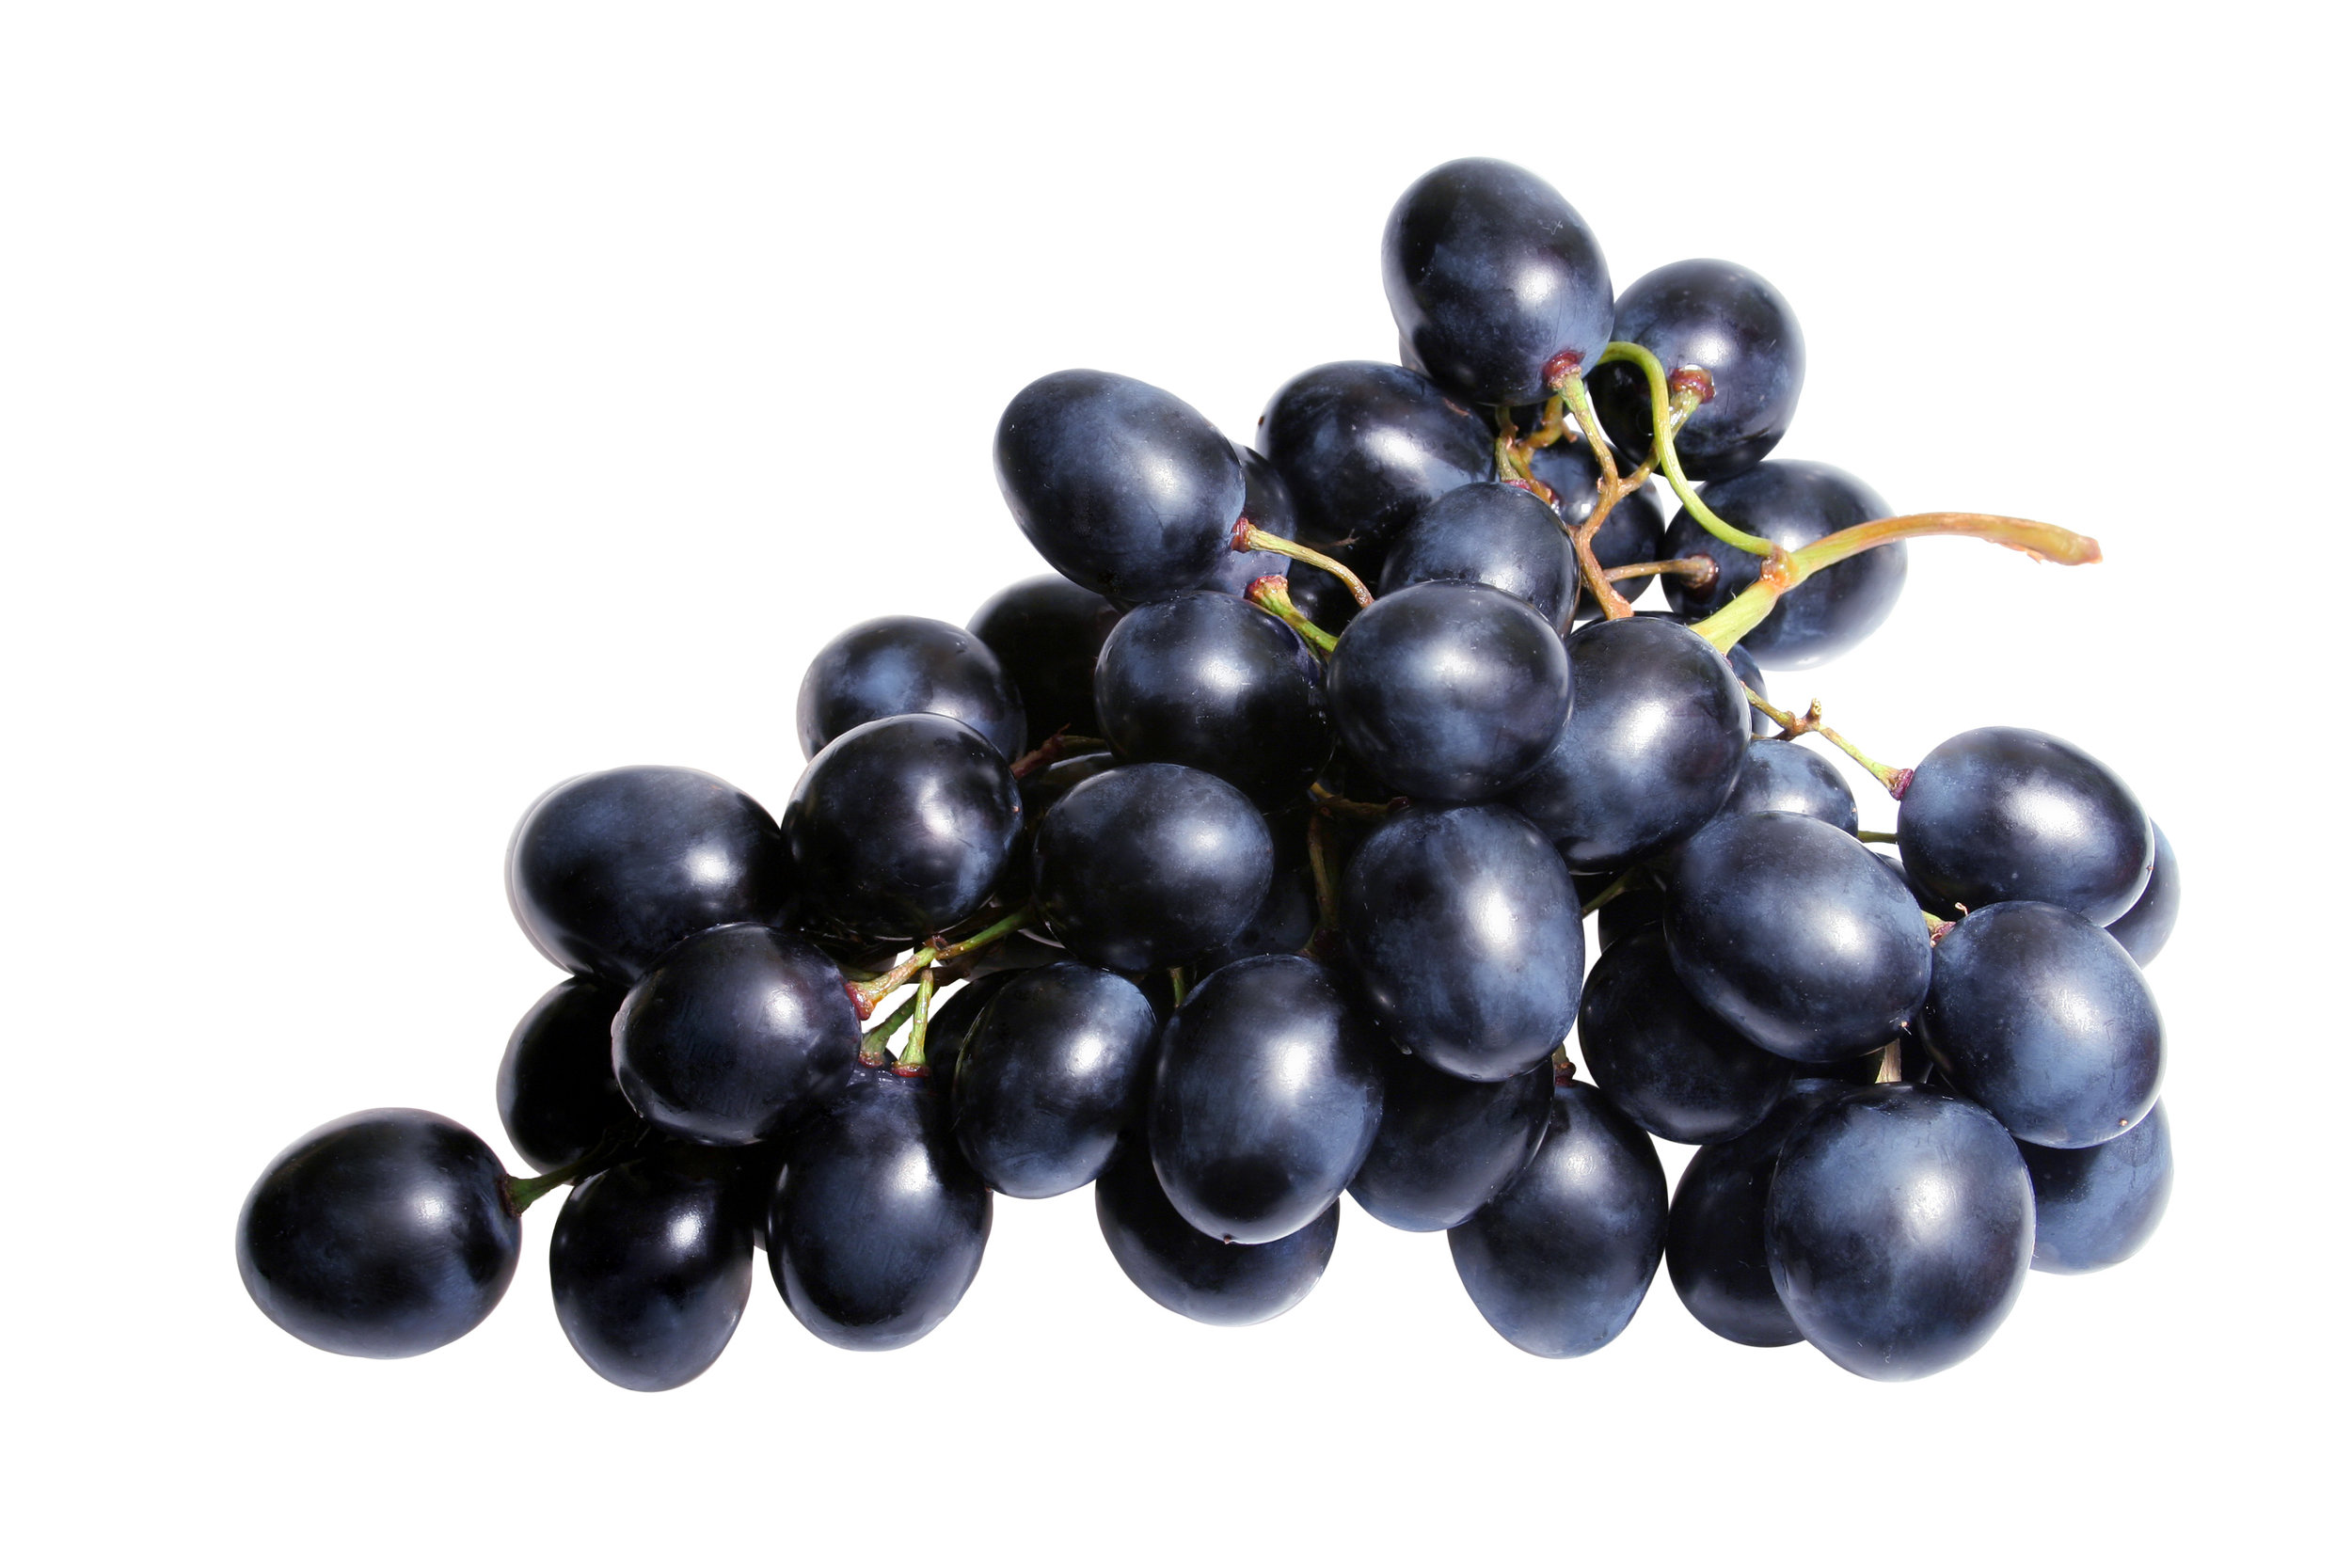 Several purple grapes